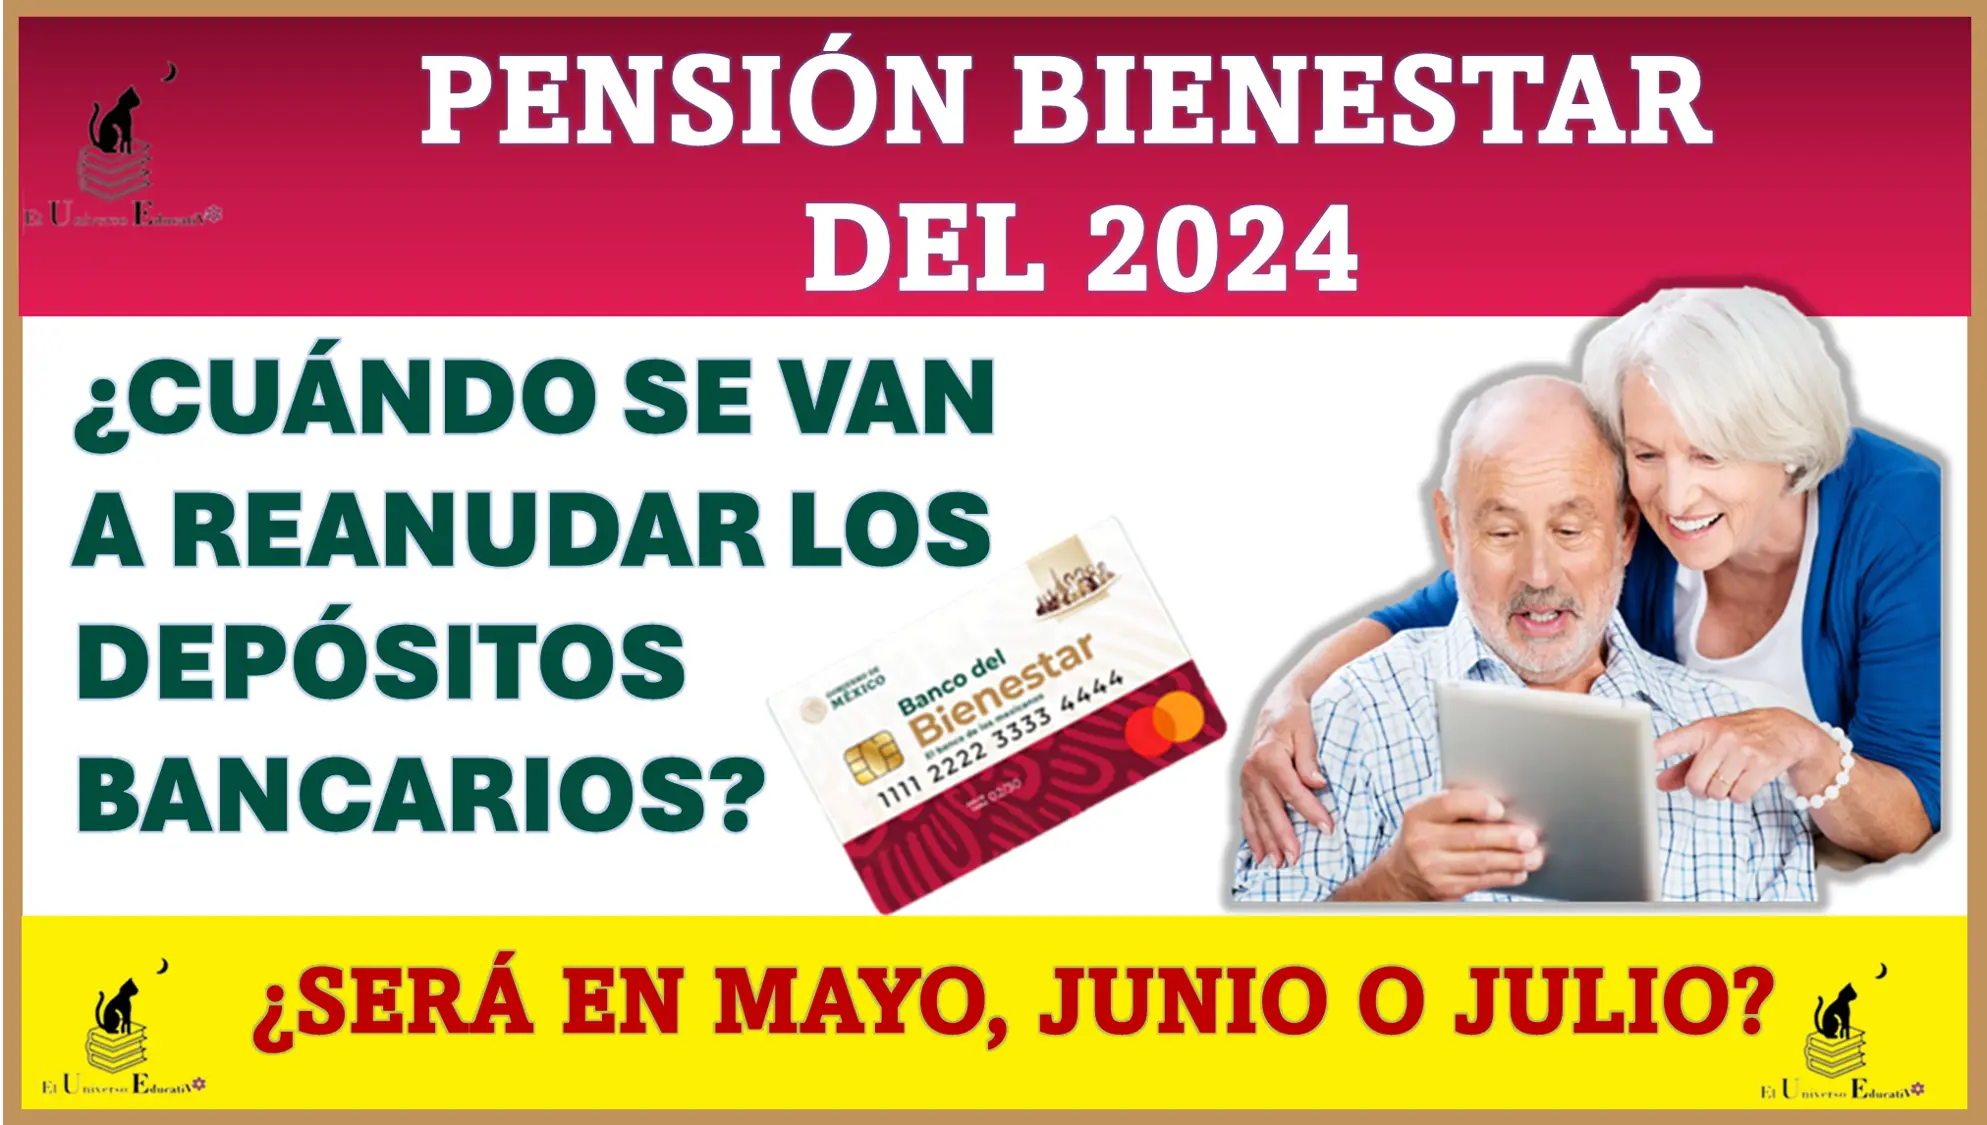 Pensión Bienestar del 2024: ¿Cuándo se van a reanudar los depósitos bancarios de $6,000 pesos?, ¿será en mayo, junio, o julio? 